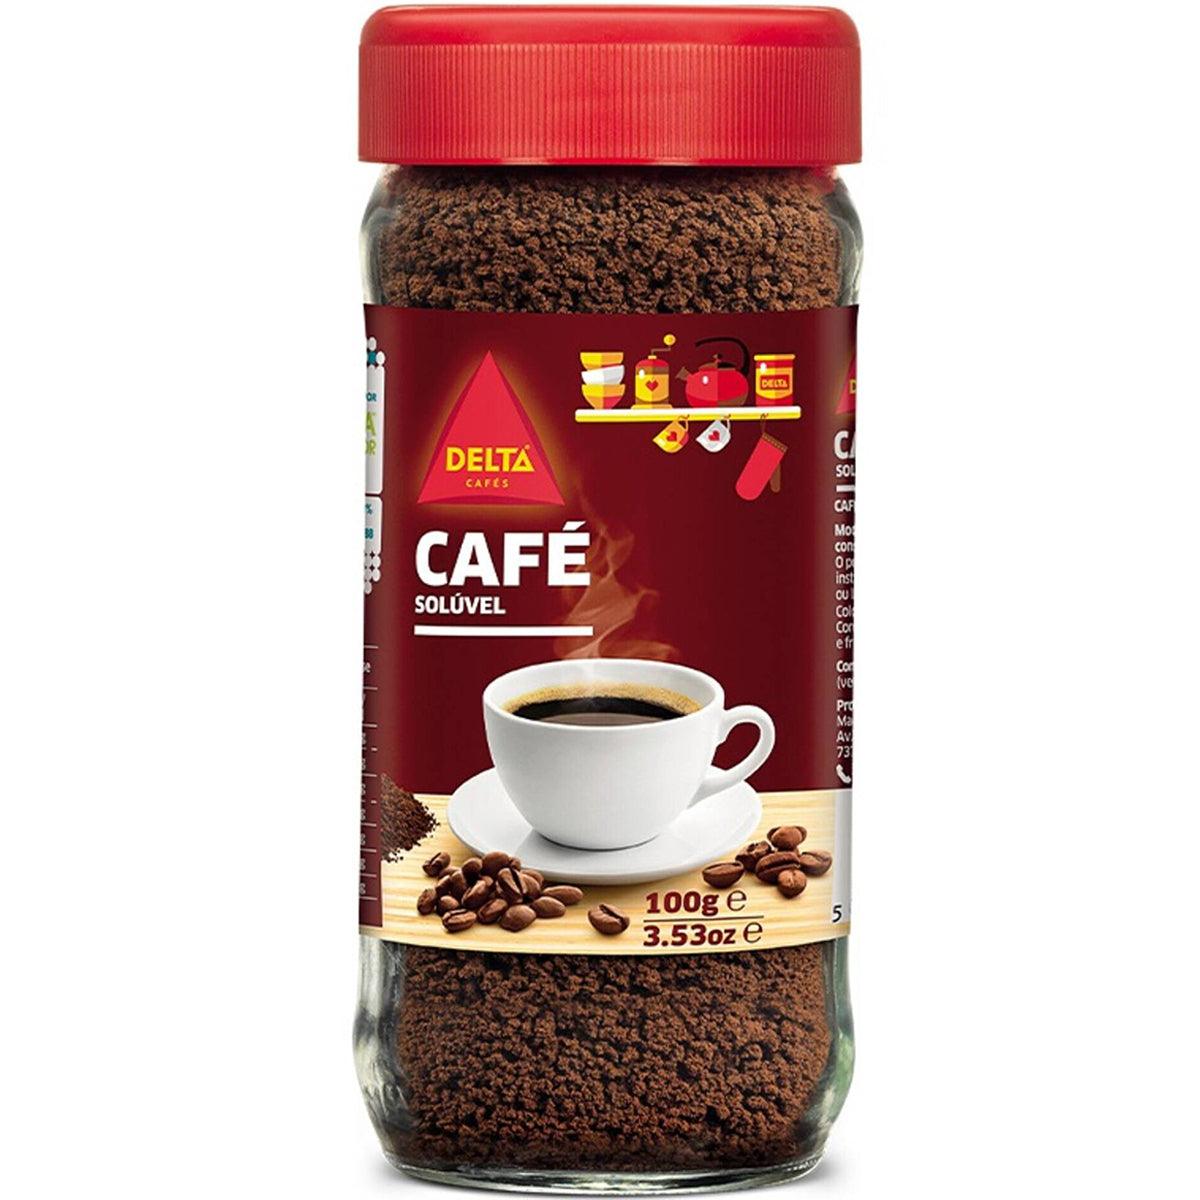 Multicoffee » Café Soluble Delta Cafés® 10 x 2g